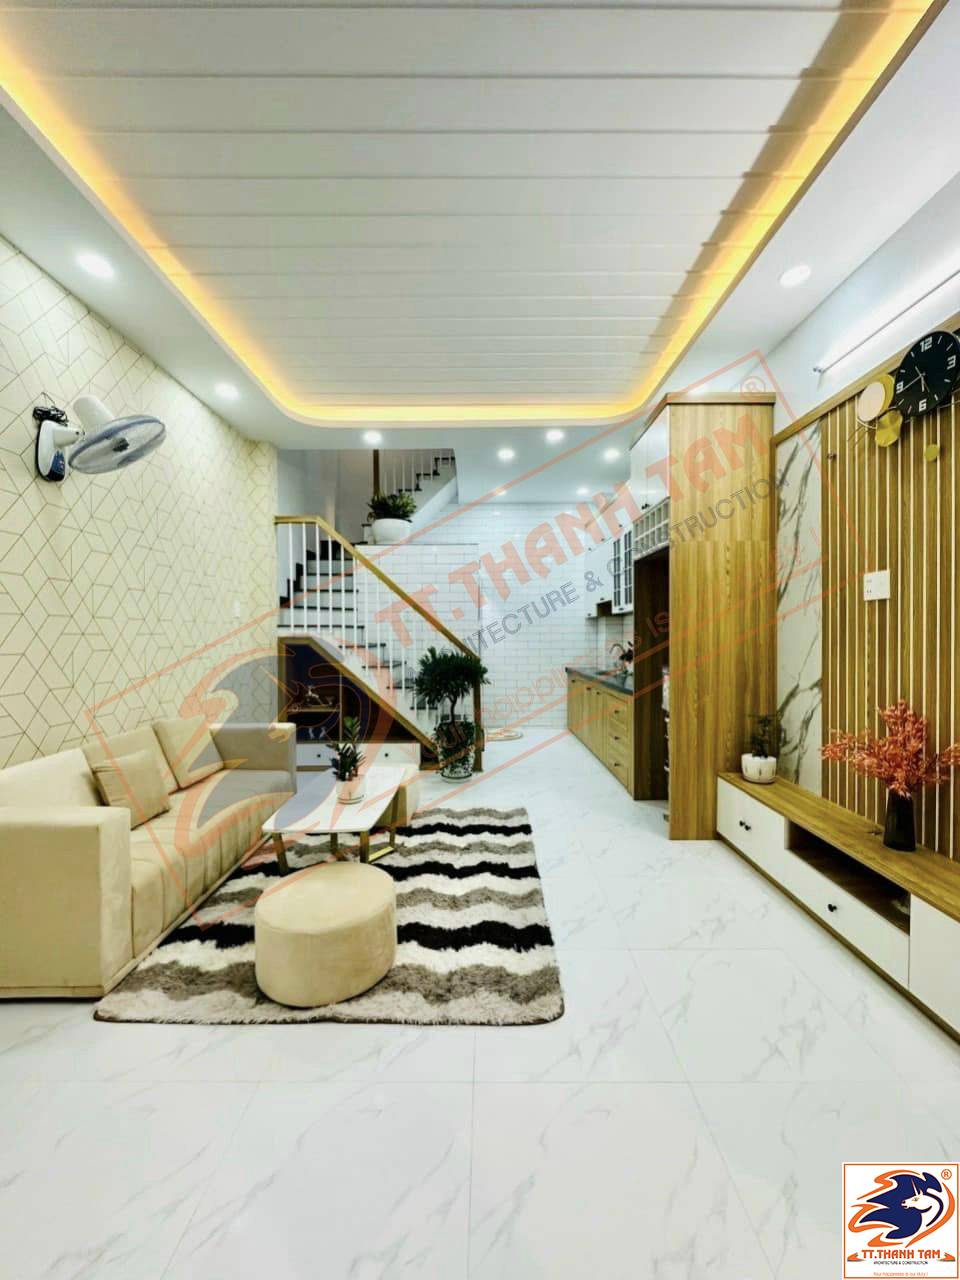 Thiết kế thi công trọn gói Nhà phố mini 3 tầng 4mx7m hiện đại tại Quận Gò Vấp – Hồ Chí Minh